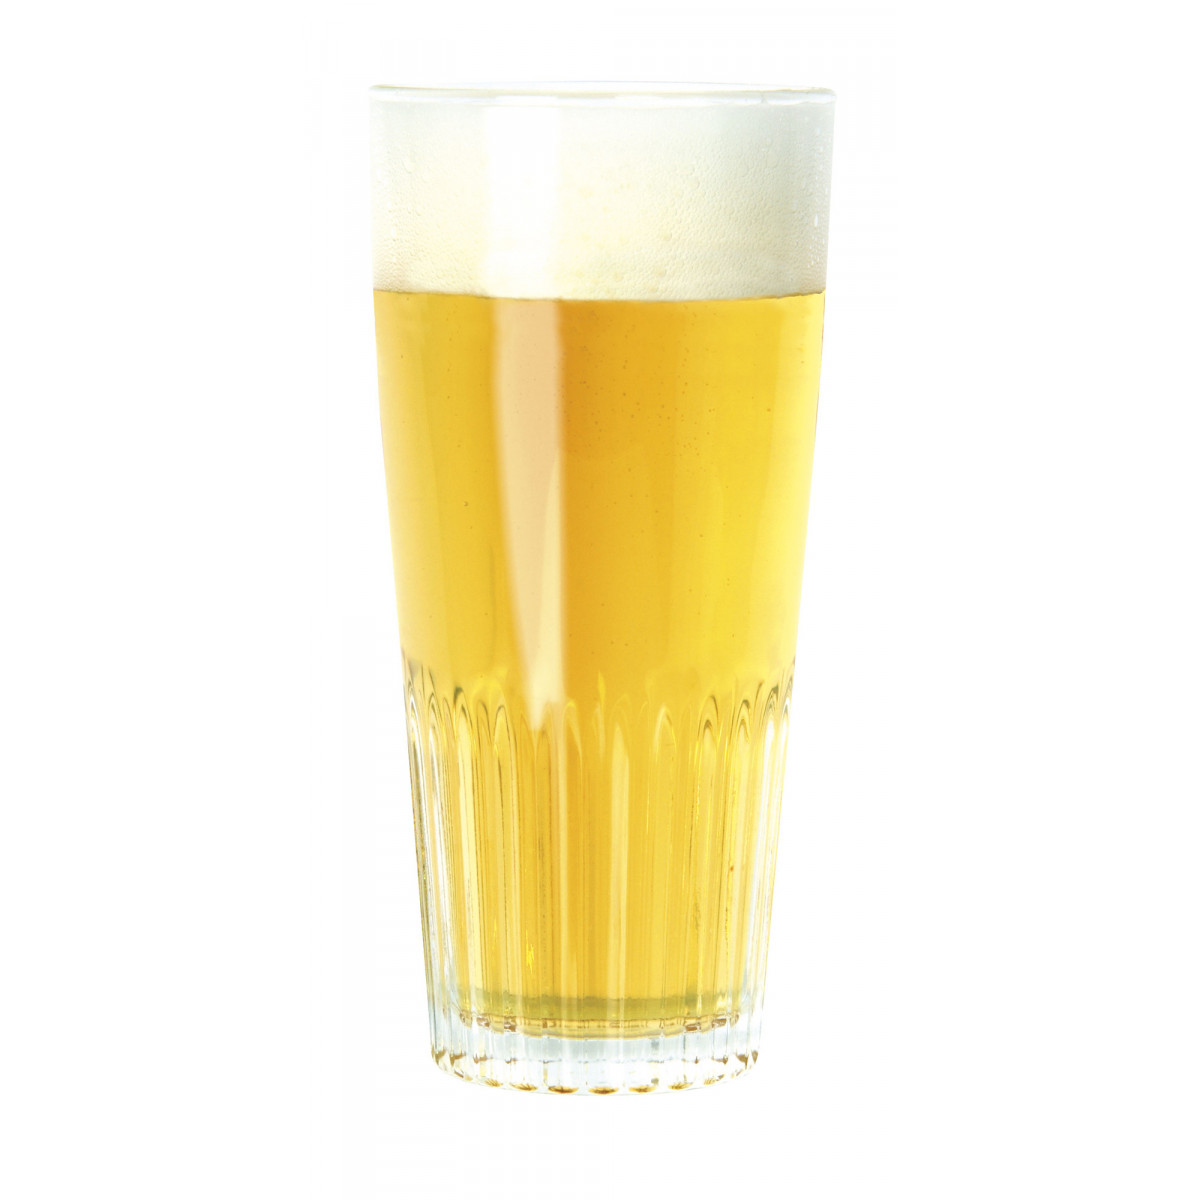 Kit tout grain bière blonde bio dès 28,32€ > Kits bière tout grain bio